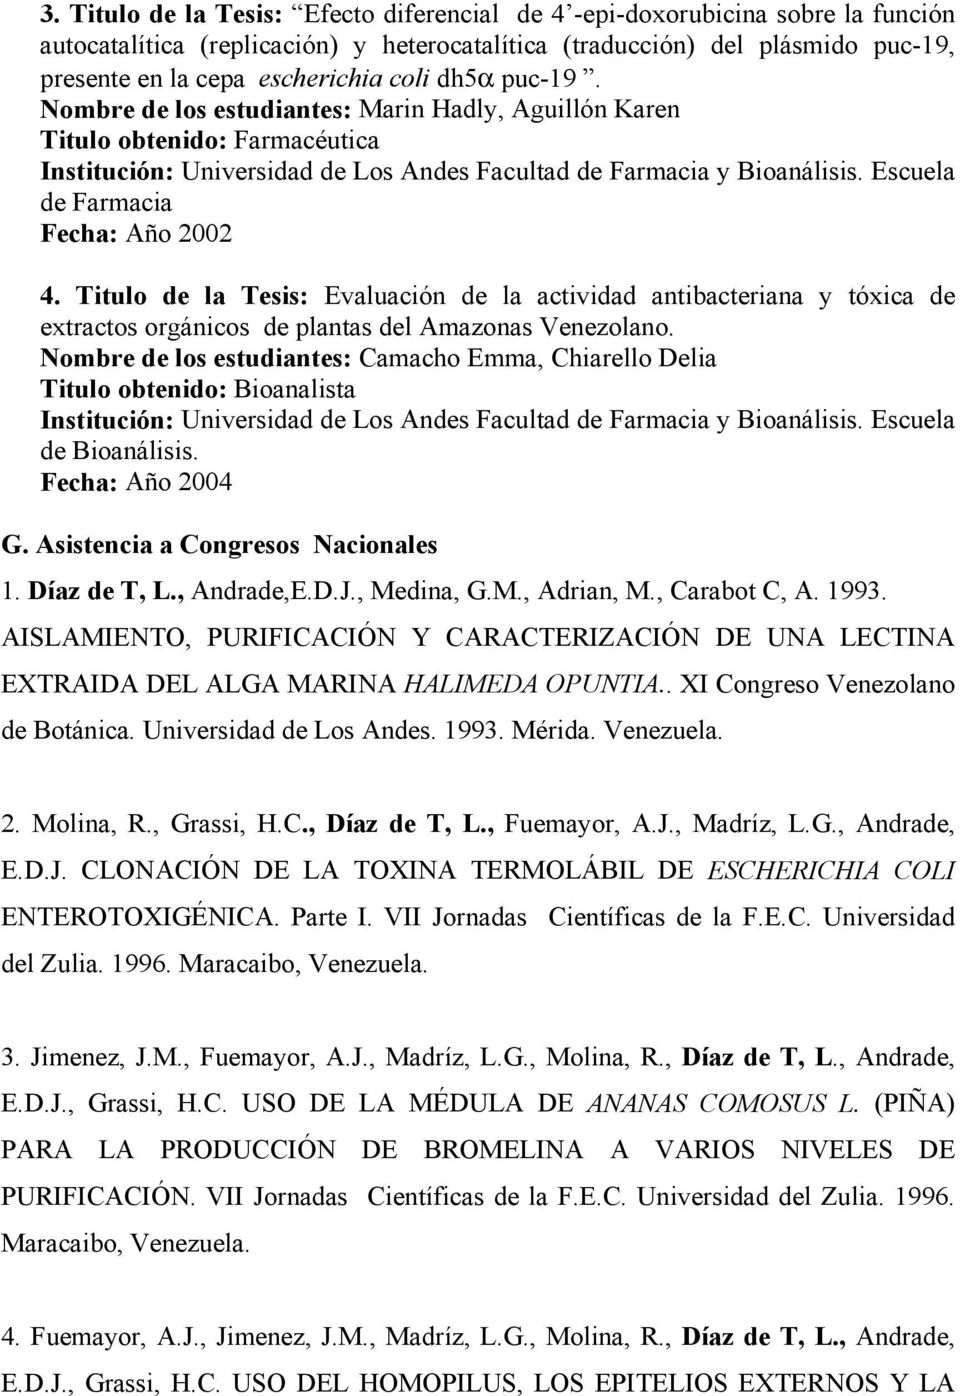 Titulo de la Tesis: Evaluación de la actividad antibacteriana y tóxica de extractos orgánicos de plantas del Amazonas Venezolano.